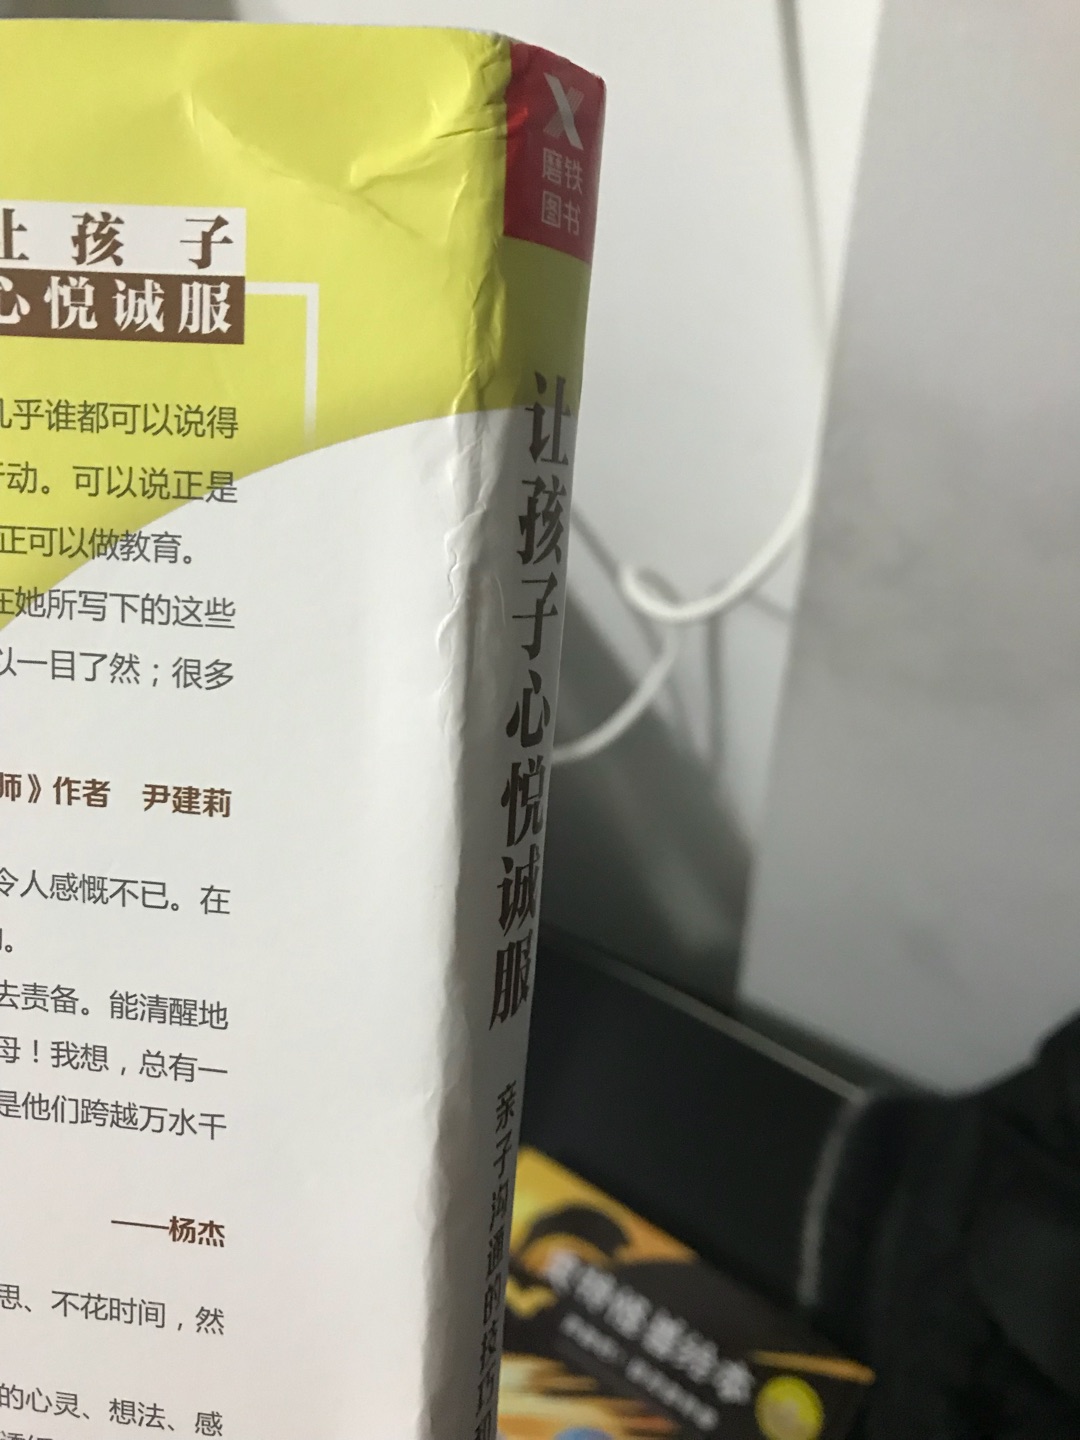 网络上试阅觉得这本书很不错，内容实用程度要比要妈妈那本还好就买了，但是广州出库打包的工作人员很糟糕，发布经常一个塑料袋了事，我外省的。